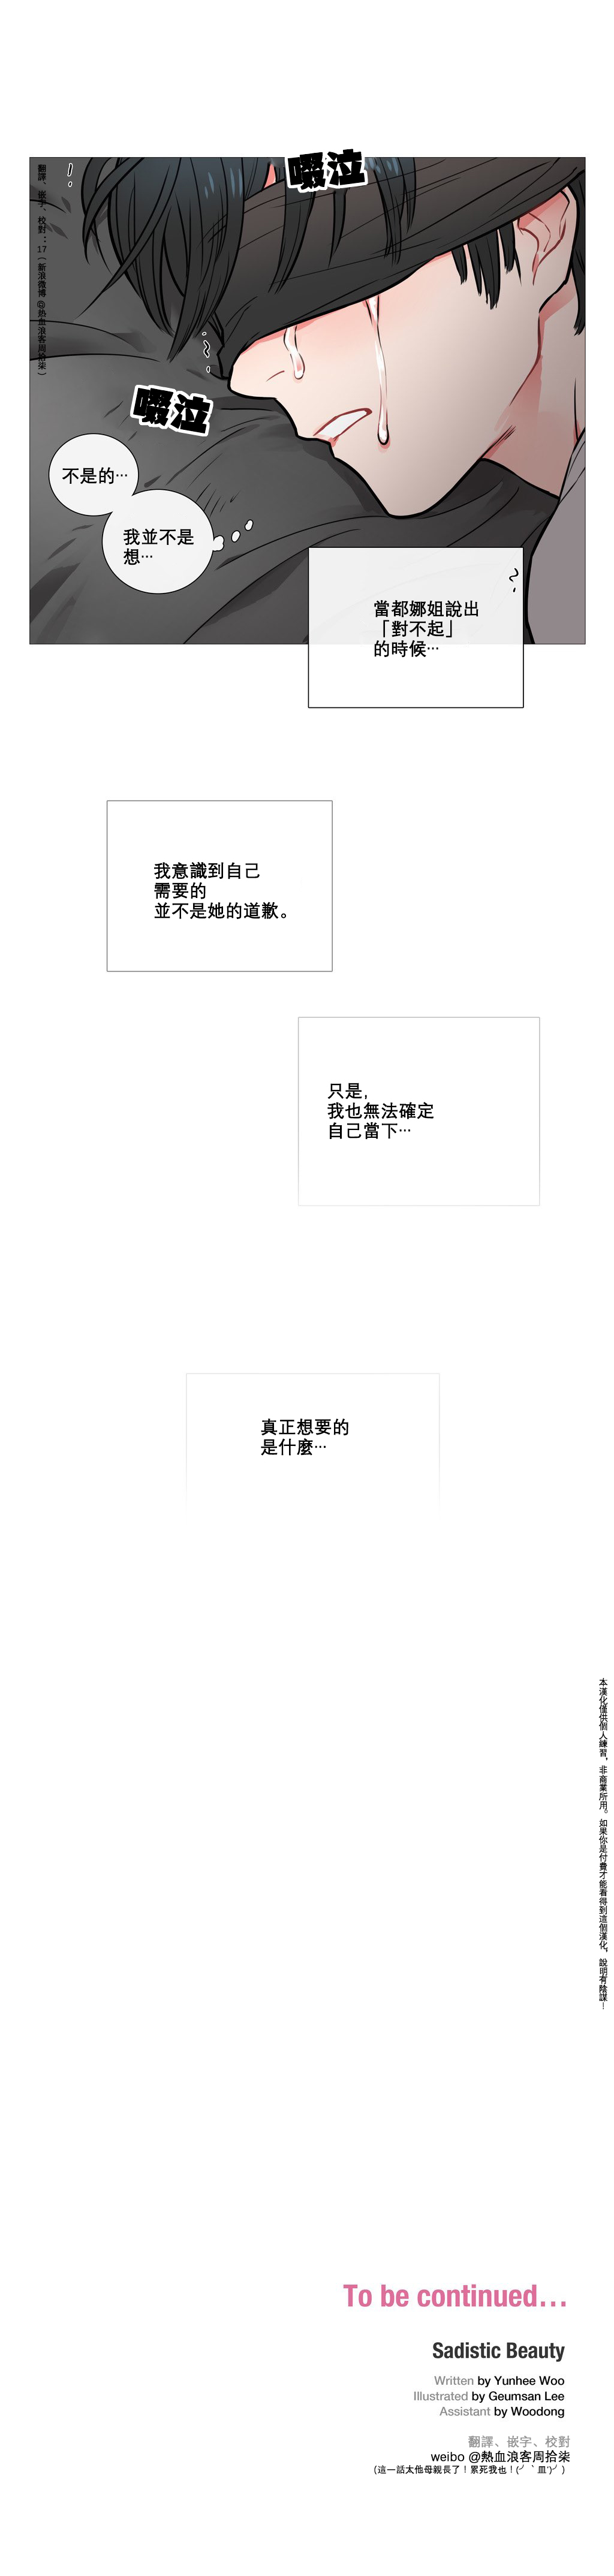 【ジンシャン】サディスティックビューティーCh.1-32【中国語】【17汉化】